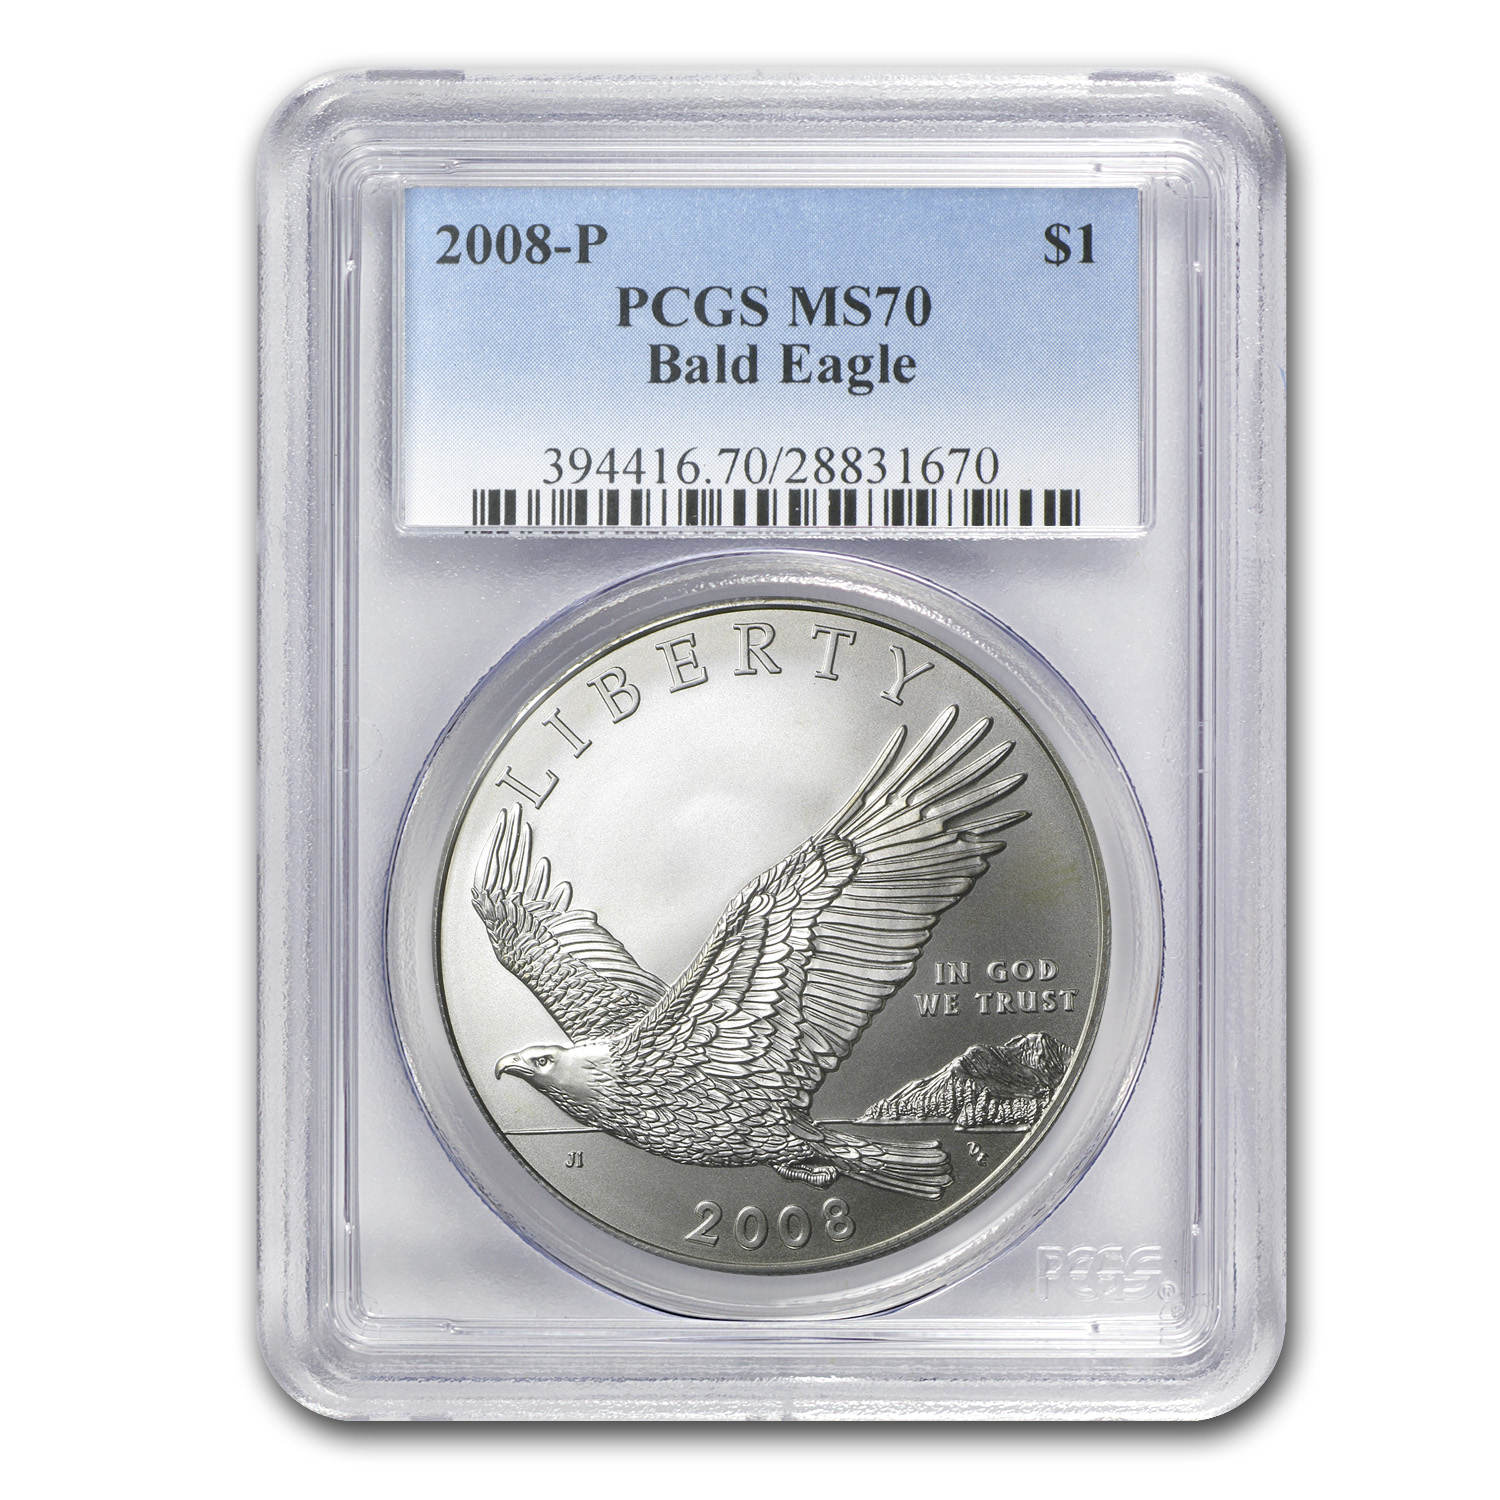 Buy 2008-P Bald Eagle $1 Silver Commem MS-70 PCGS